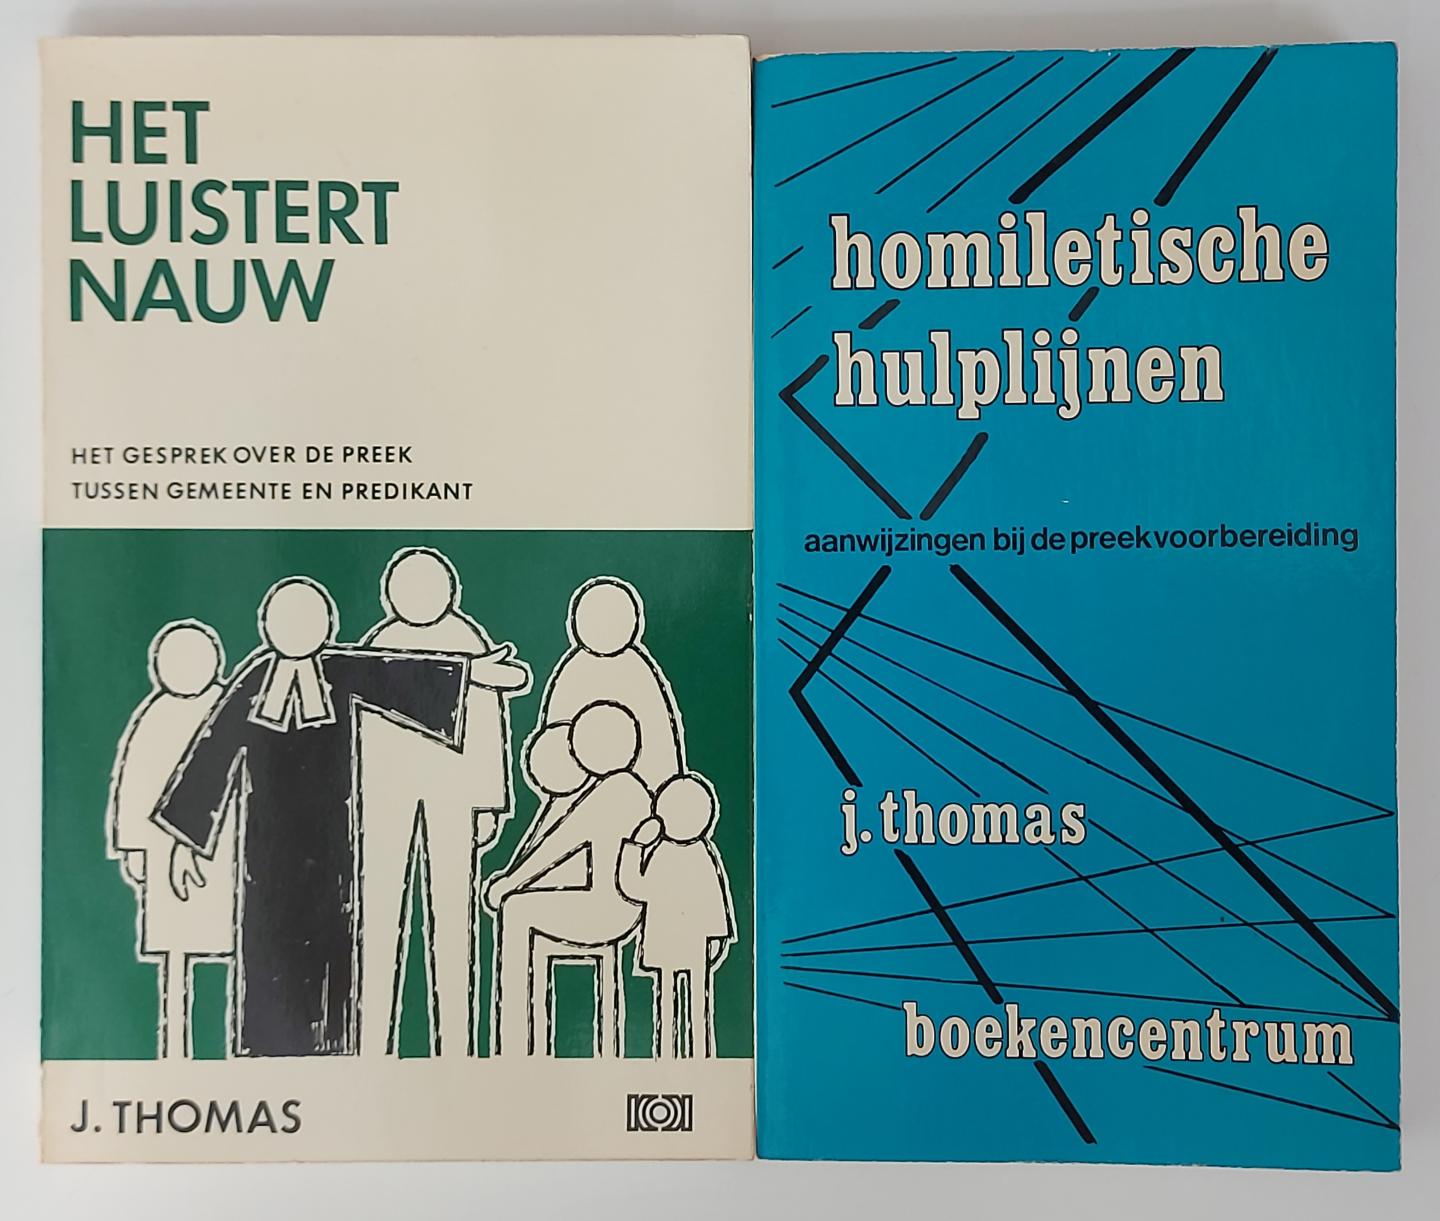 Thomas, J. - SET 2 boeken: Homiletische hulplijnen (aanwijzingen bij de preekvoorbereiding) + Het luistert nauw (het gesprek over de preek tussen gemeente en predikant)